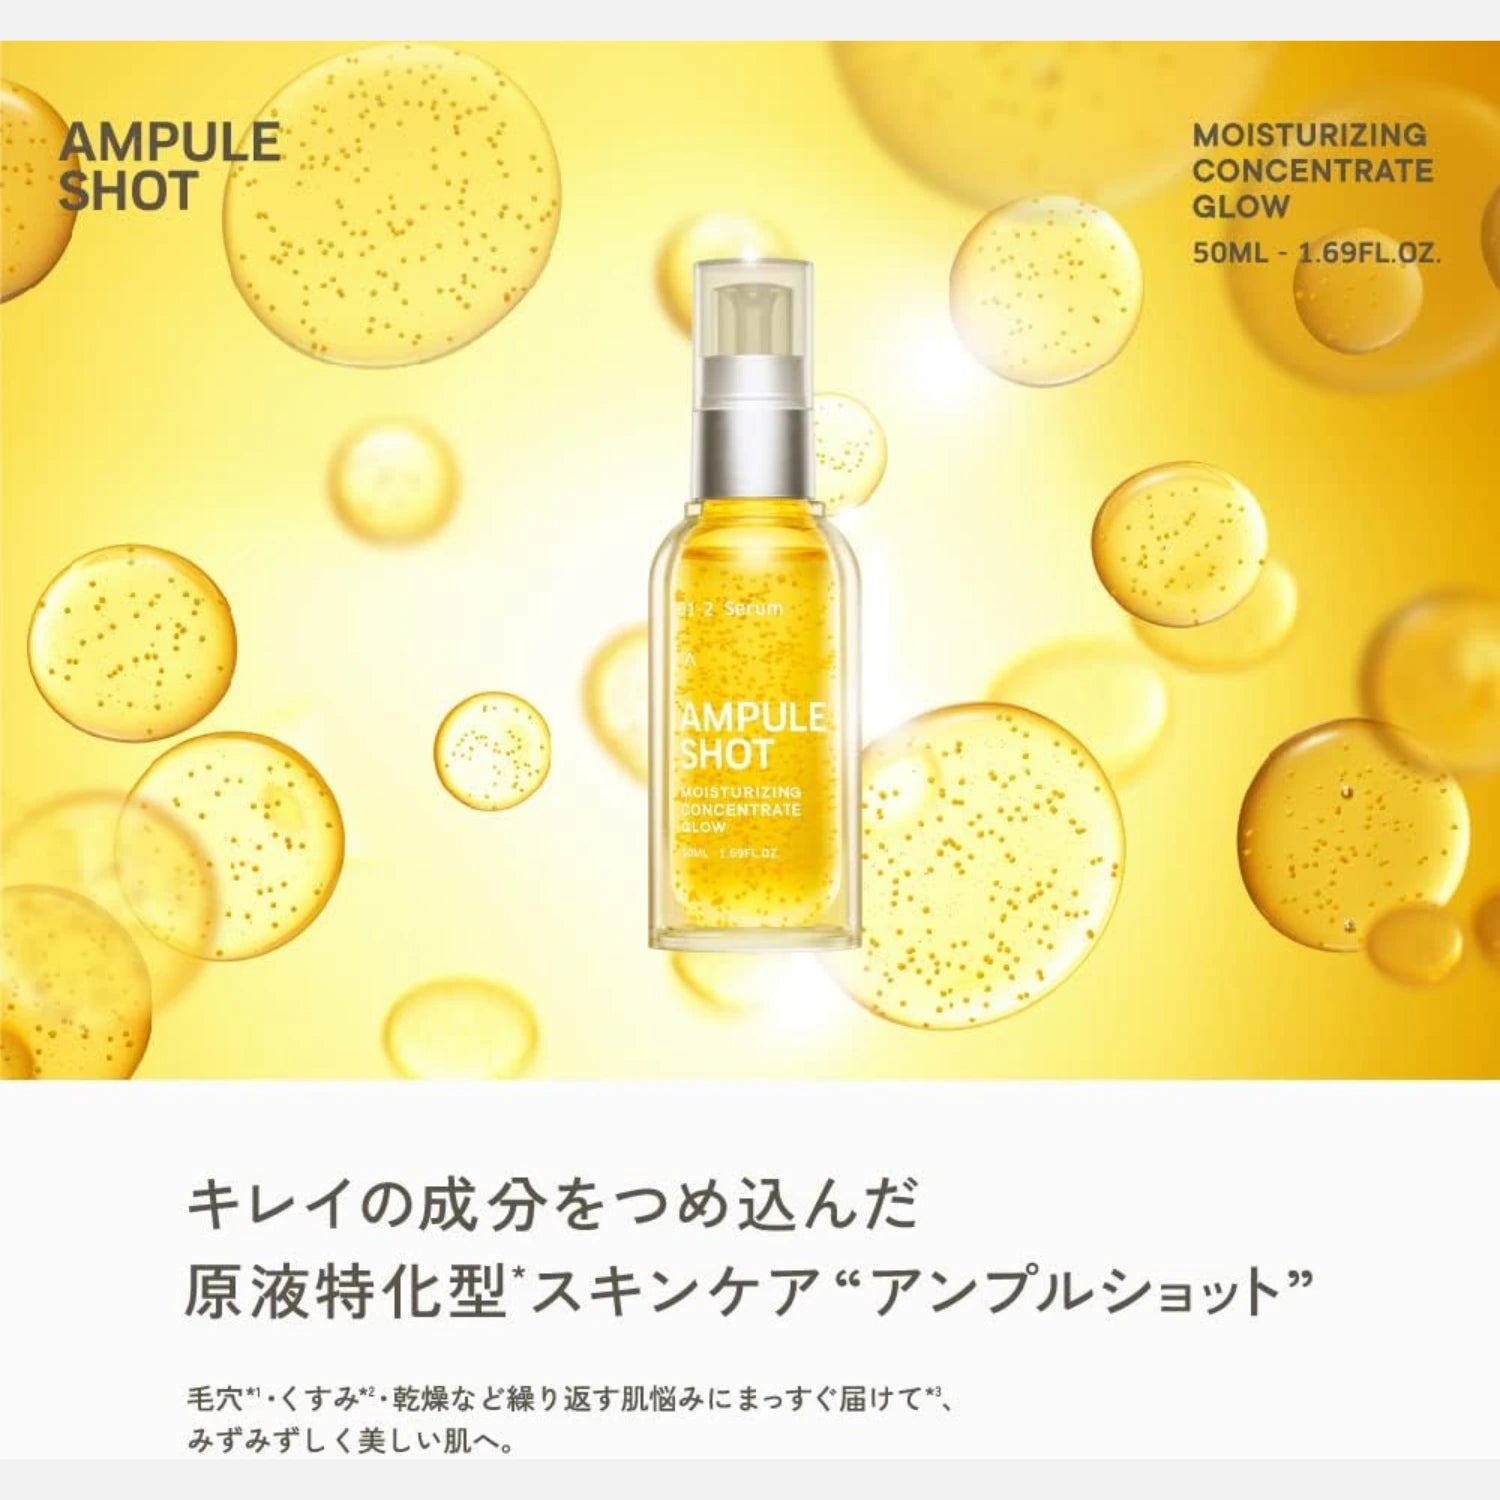 Ampule Shot Vitamim C Concentrate Glow Serum 50ml - Buy Me Japan